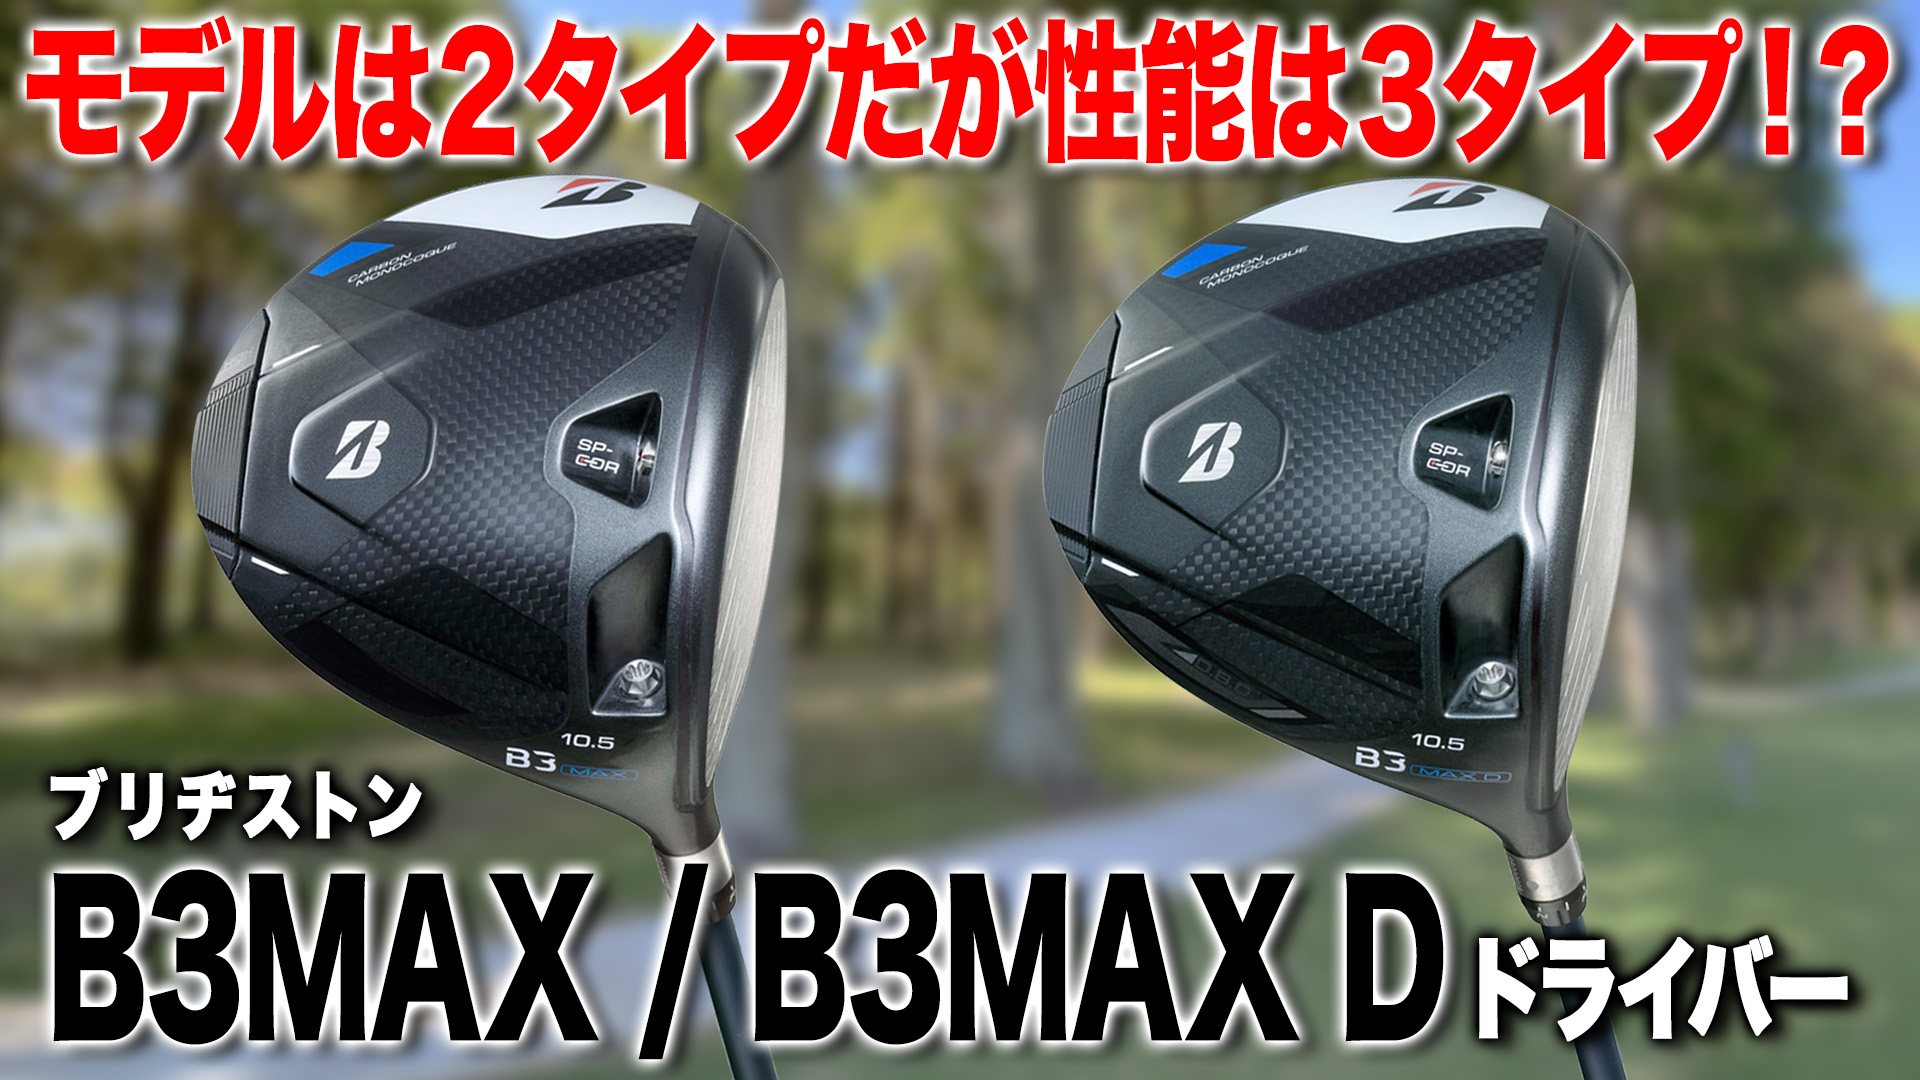 ブリヂストン「B3 MAX ・ MAX D ドライバー」【レビュー企画】